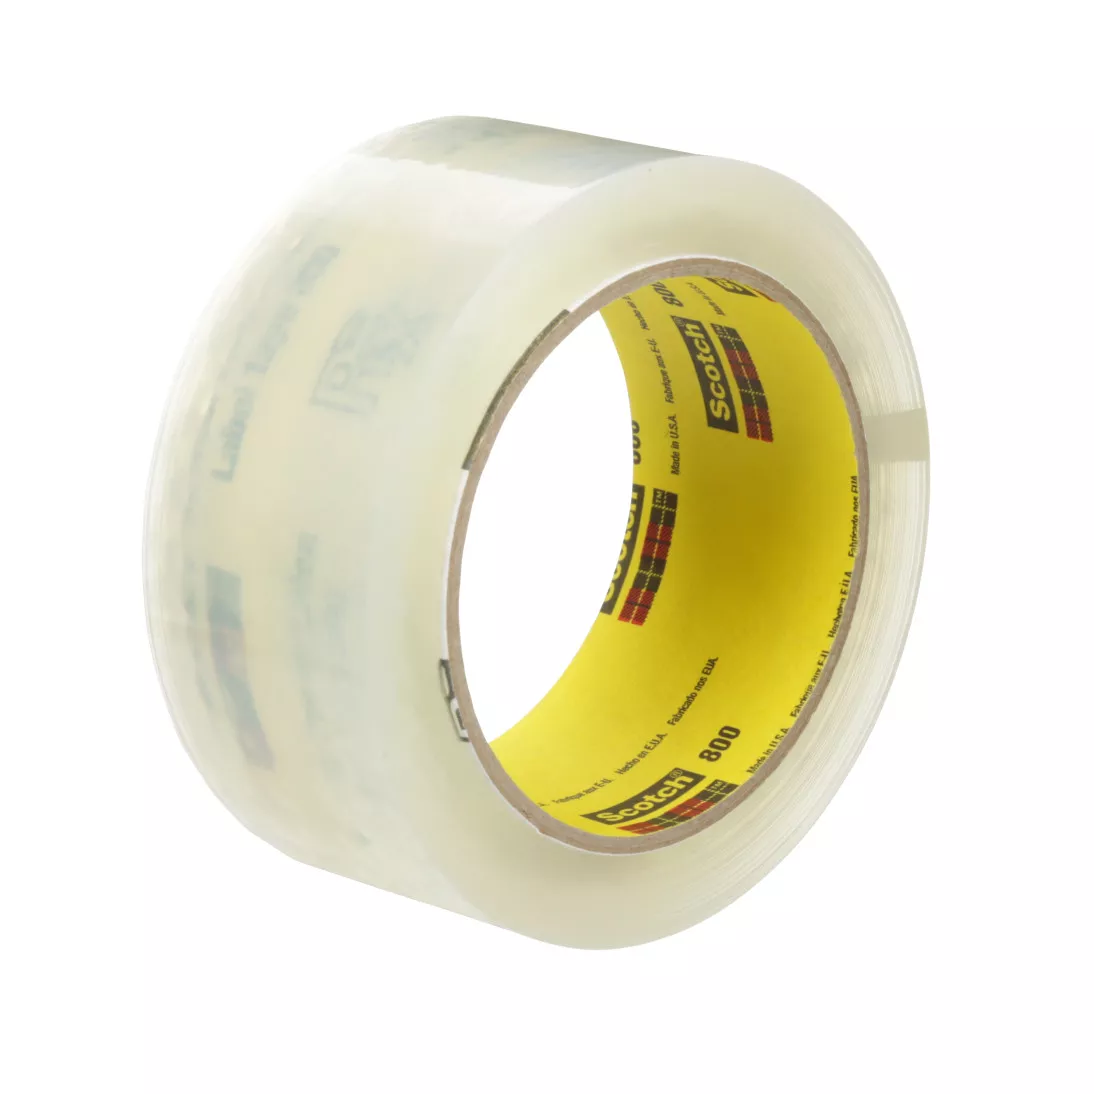 Scotch® Prescription Label Tape 800 Clear, 1 1/2 in x 72 yd, 24 per case
Bulk